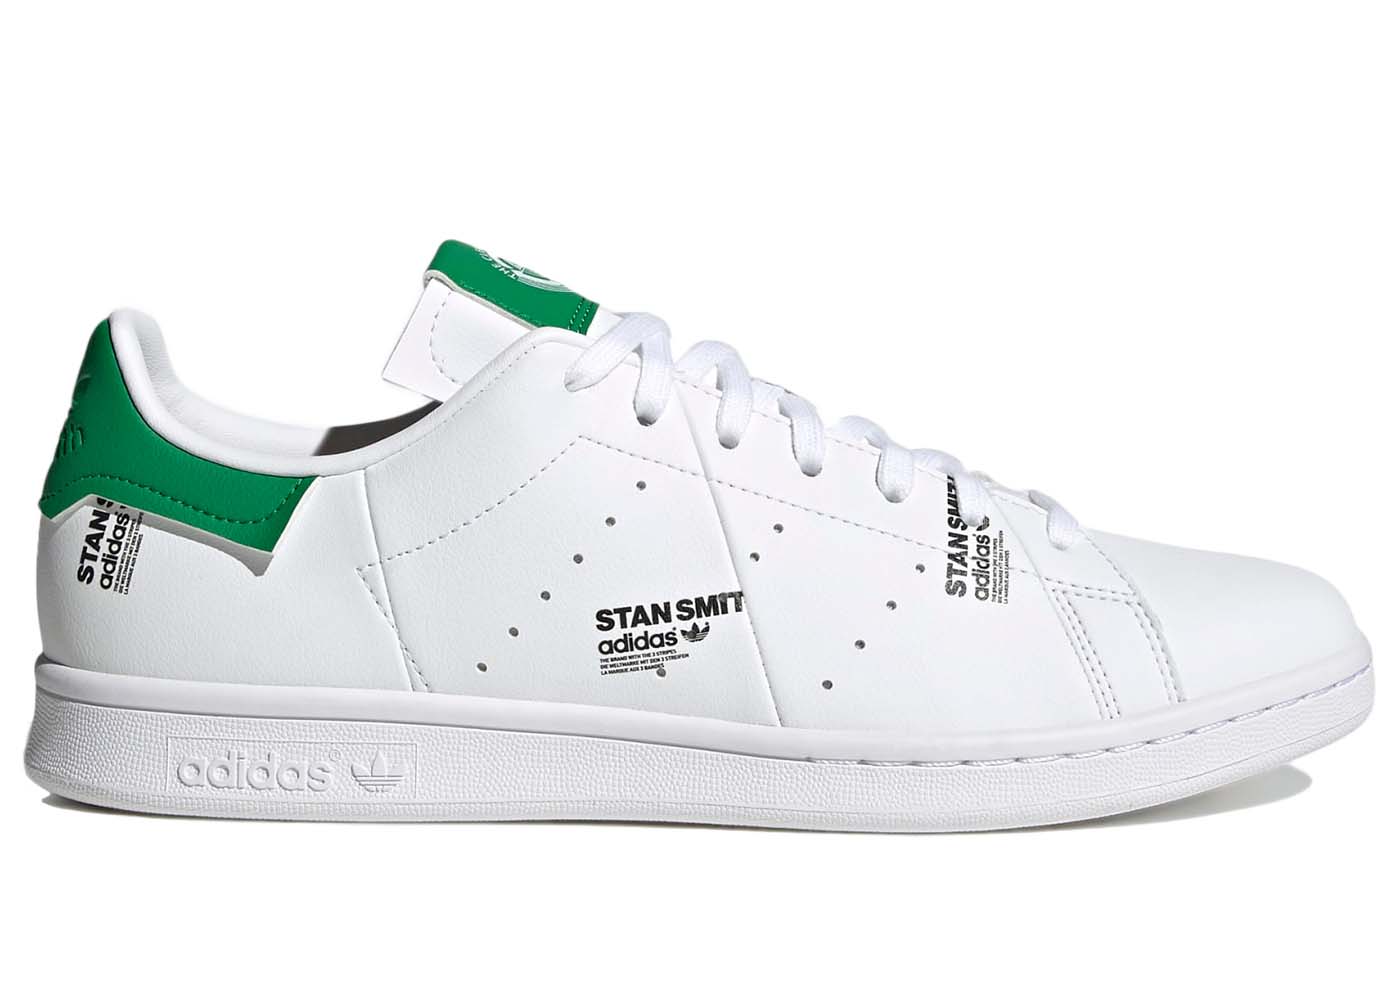 adidas Stan Smith Digital Prints White Green